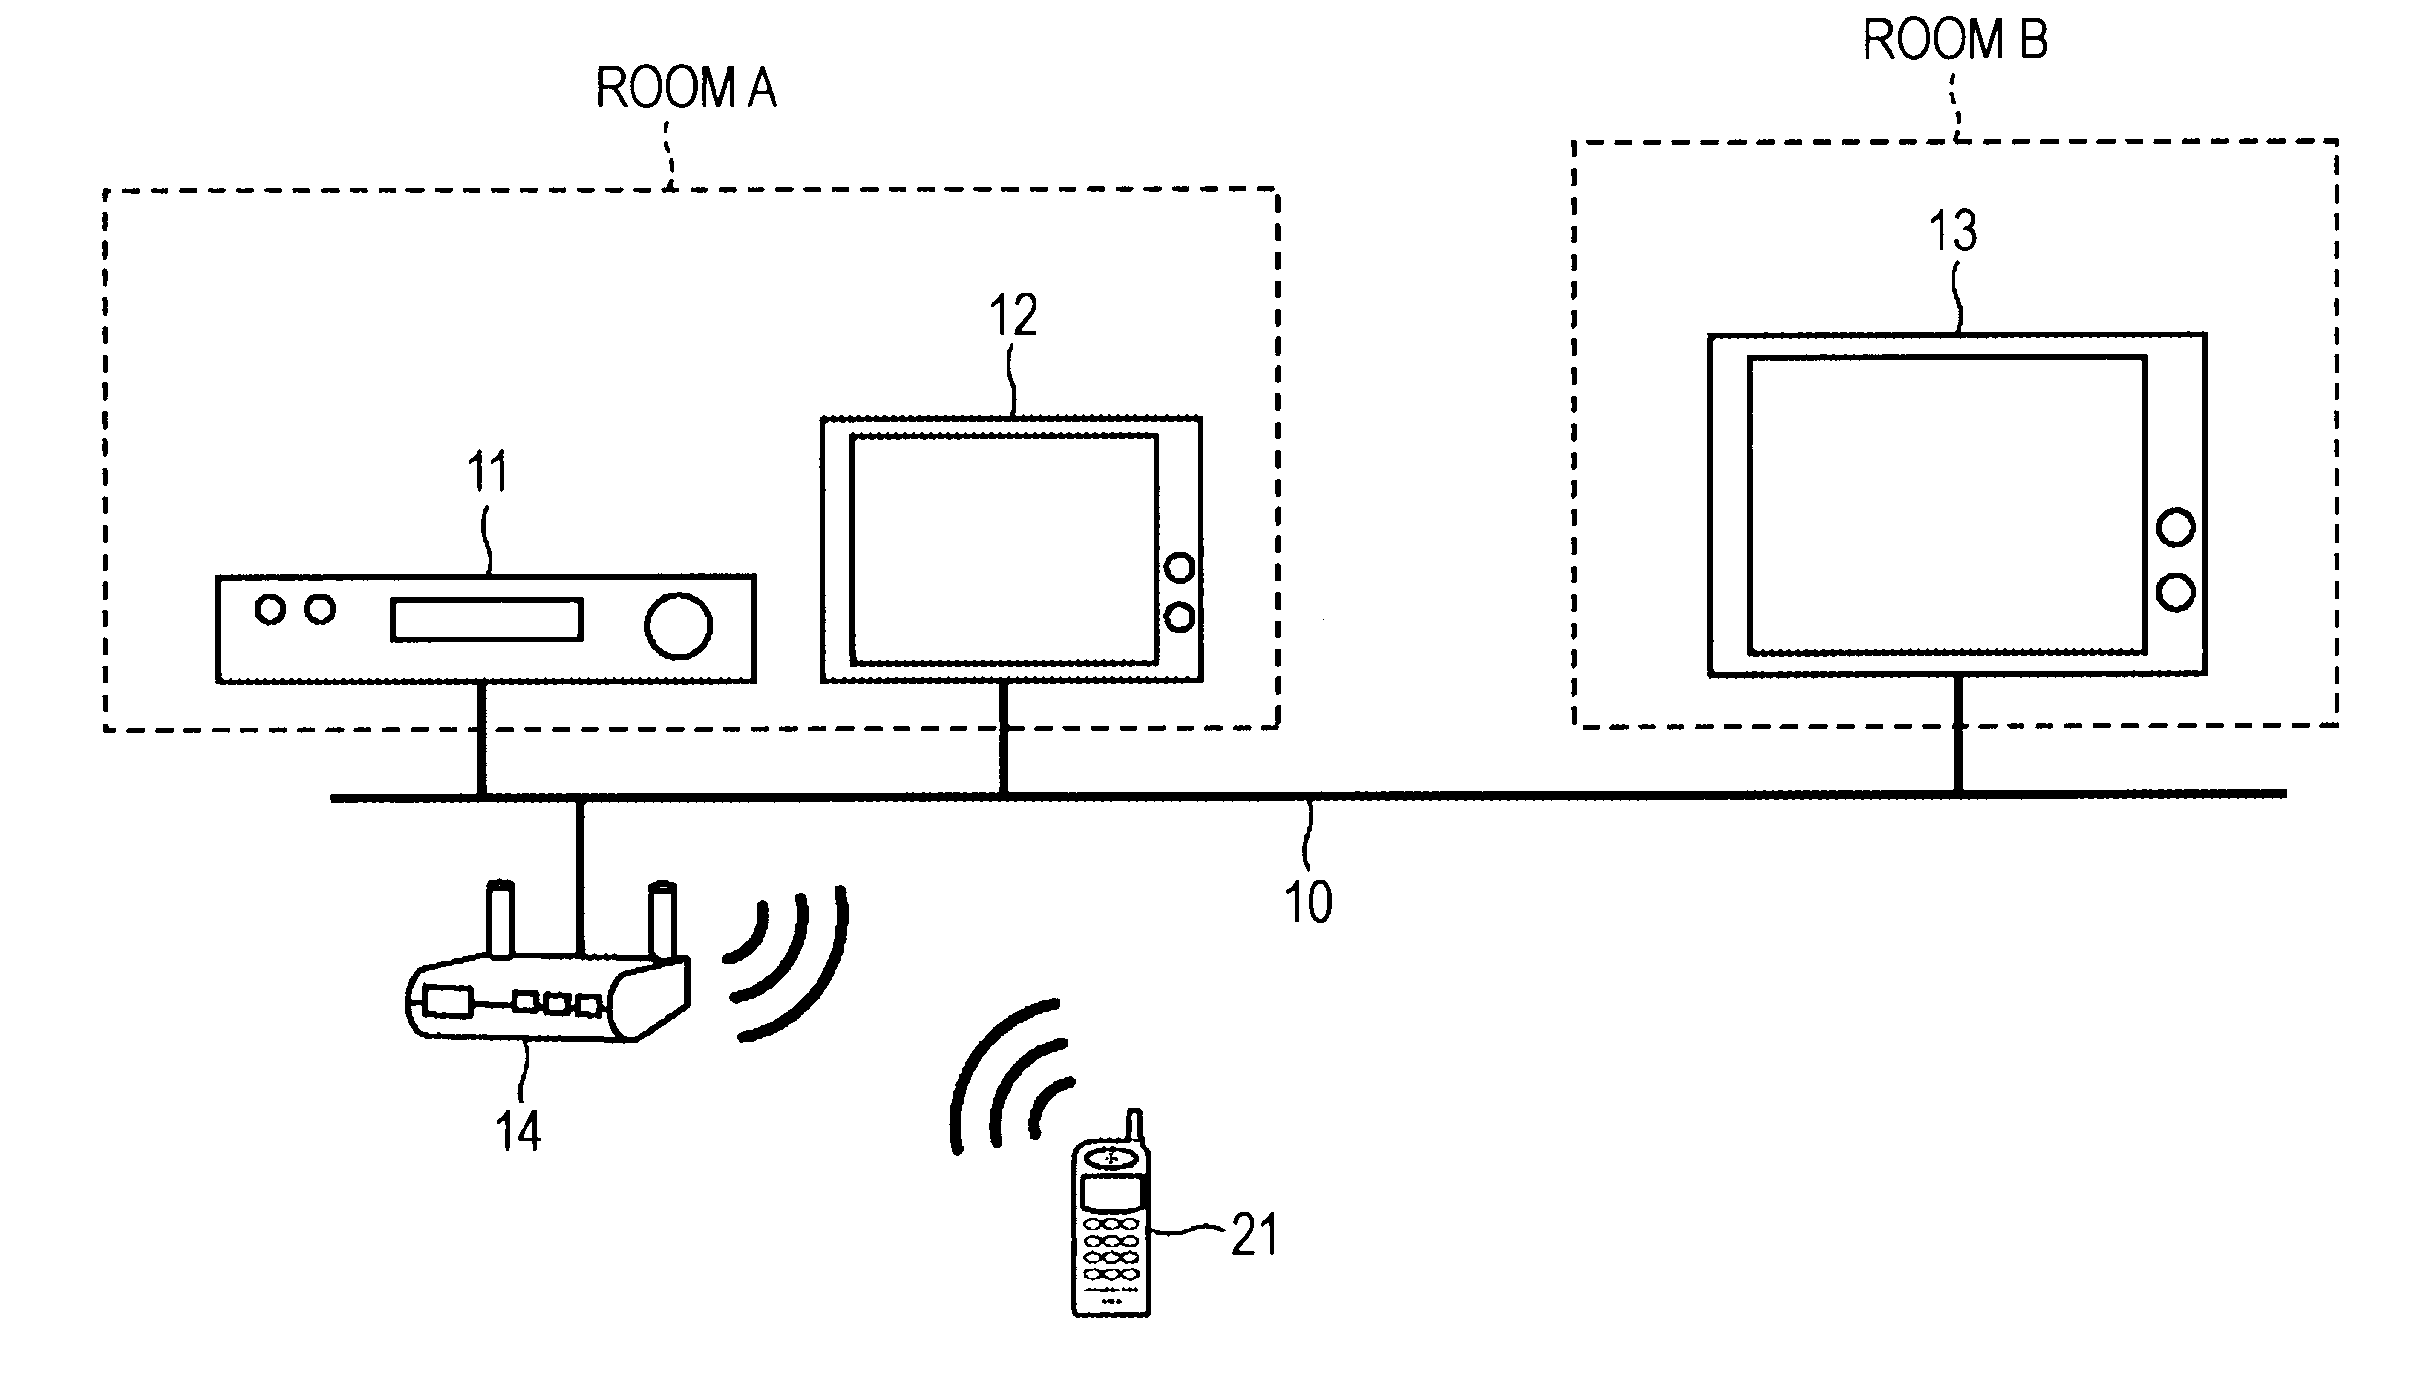 Display control apparatus, display control system, and remote control apparatus